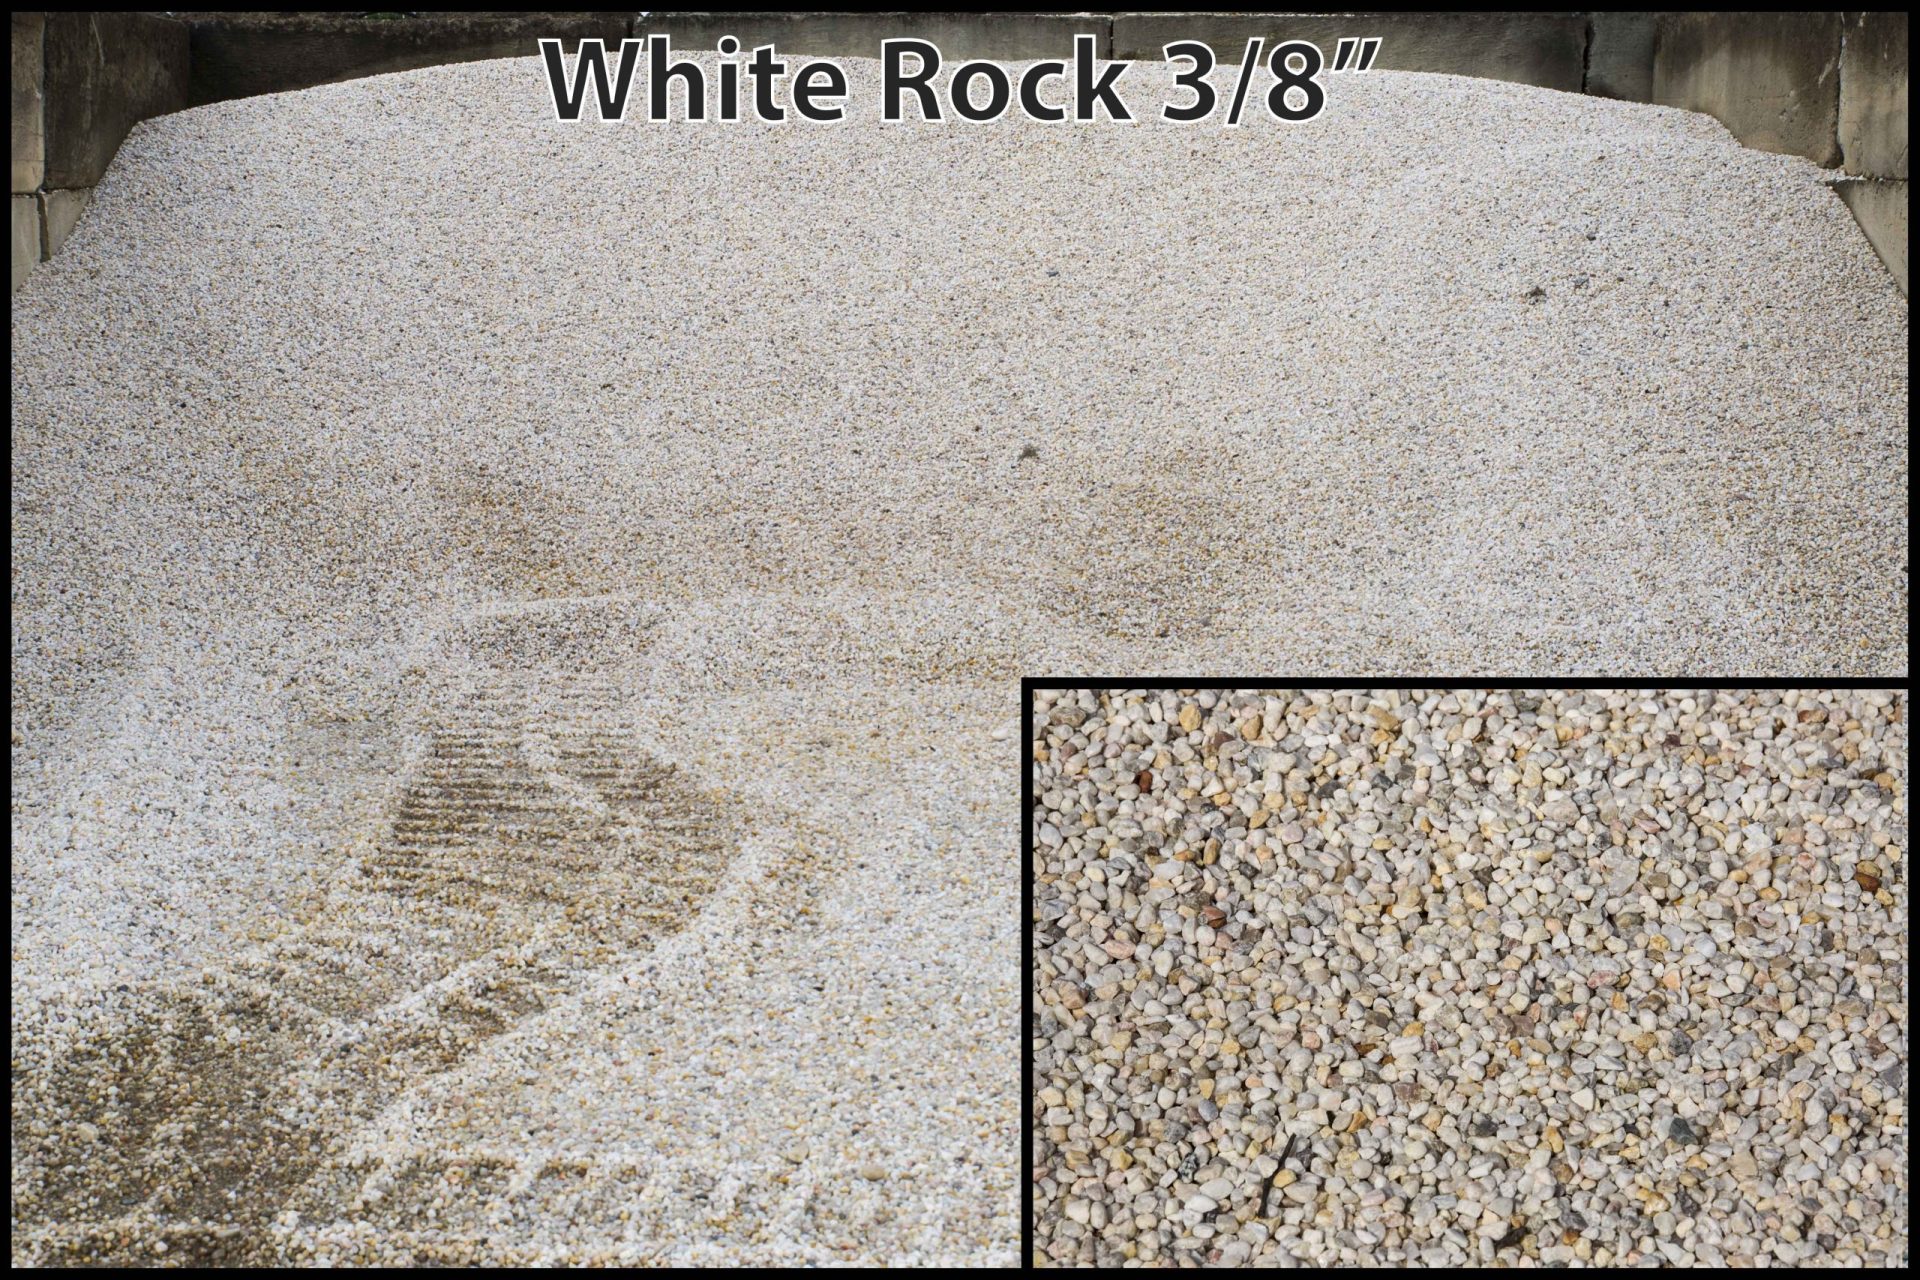 White Rock 3/8"